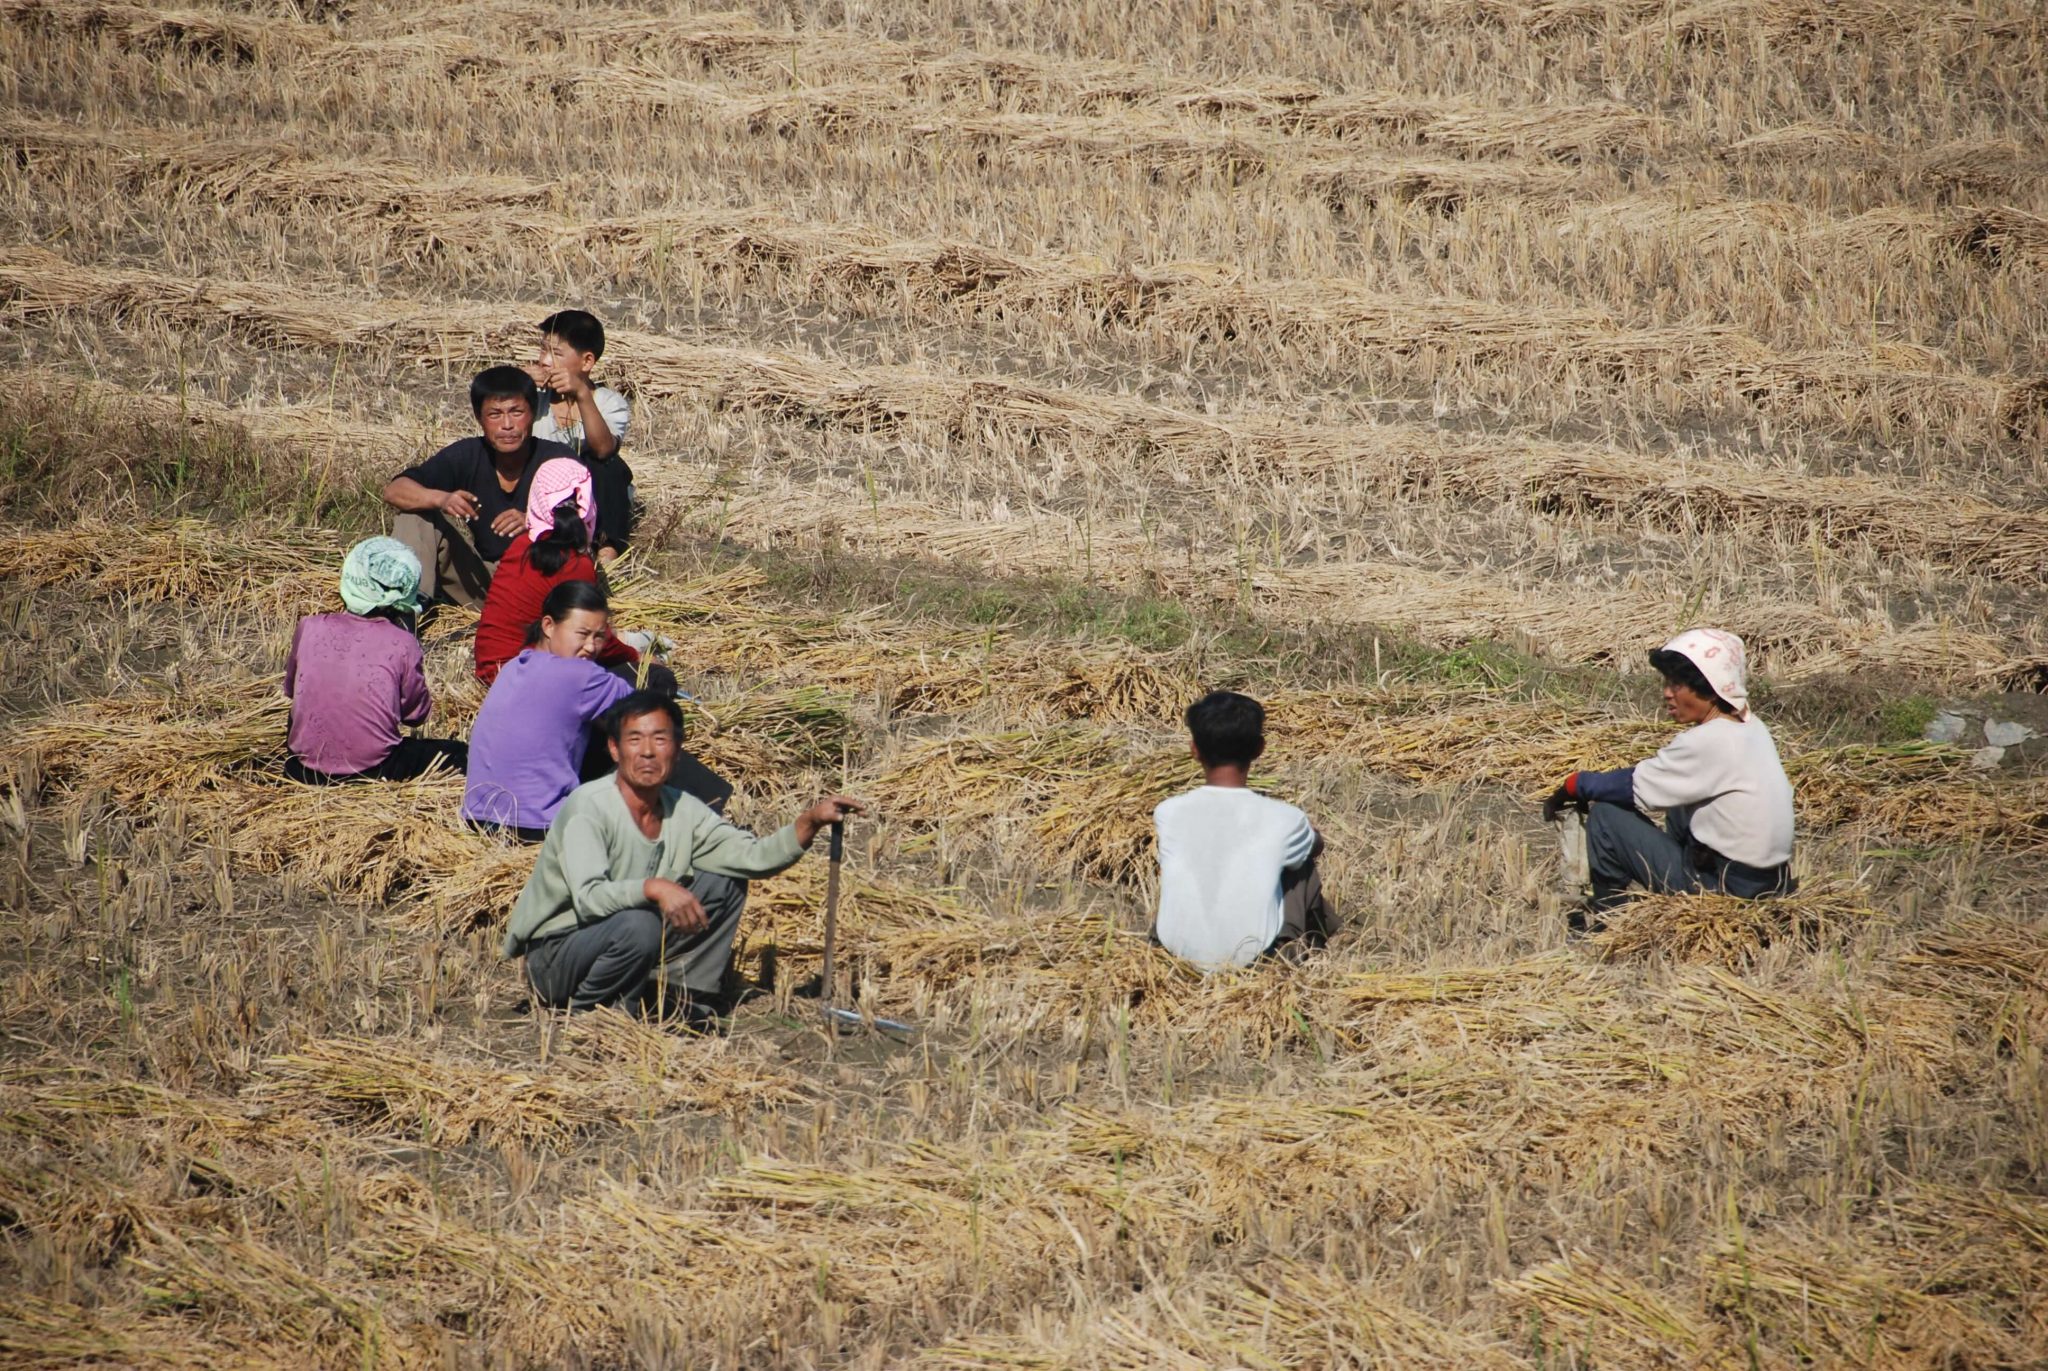 Ihmisiä istuu pellolla pitämässä taukoa peltotöistä.